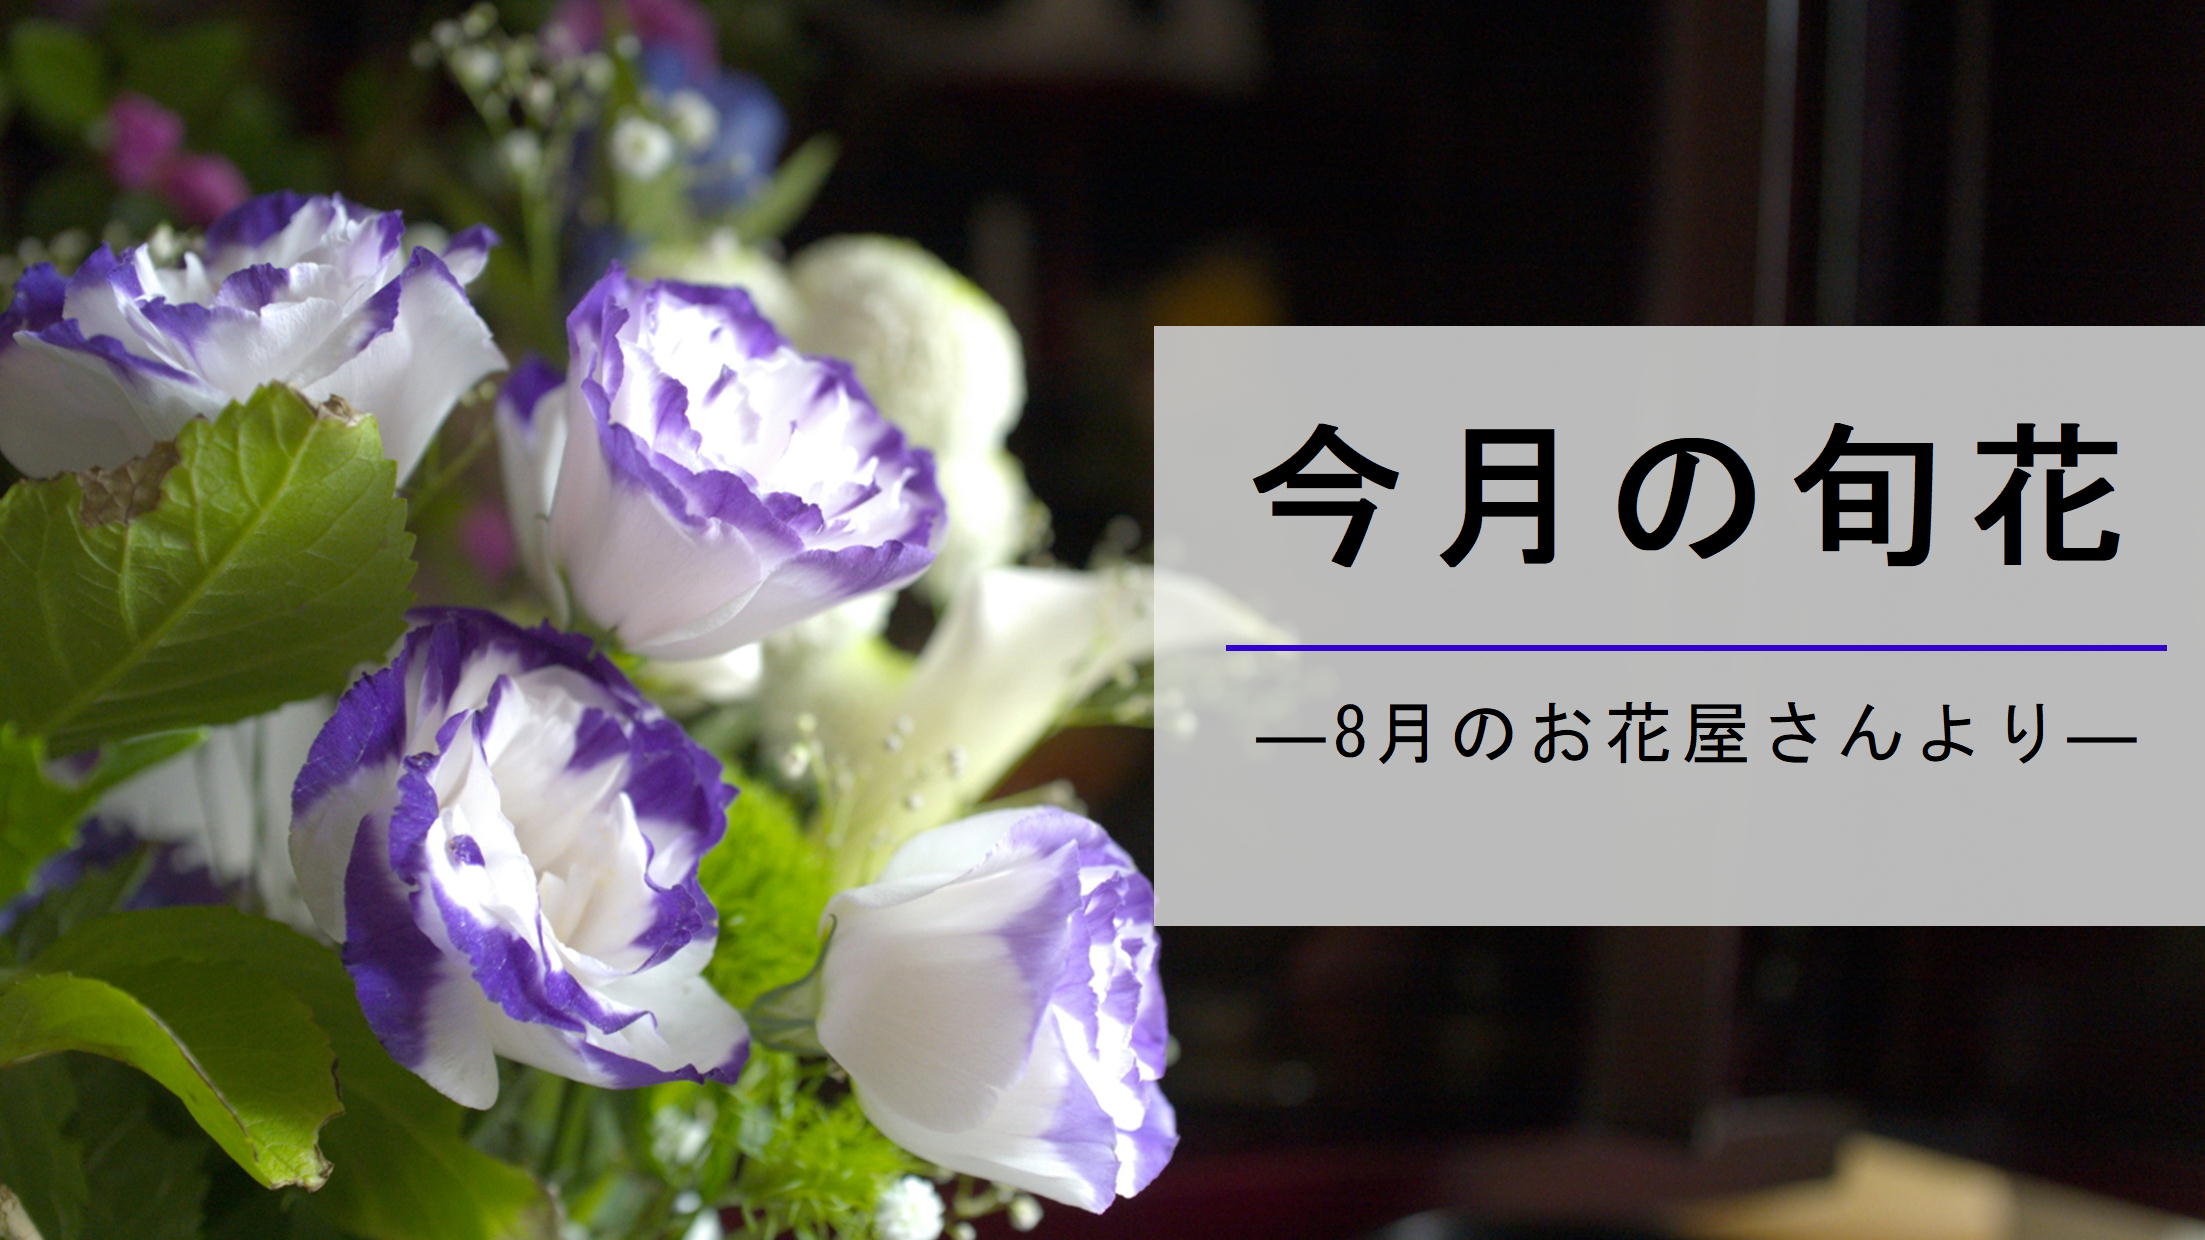 8月のお花屋さん おすすめの旬の花 誕生花 イベントまとめ 切花情報サイト ハナラボノート